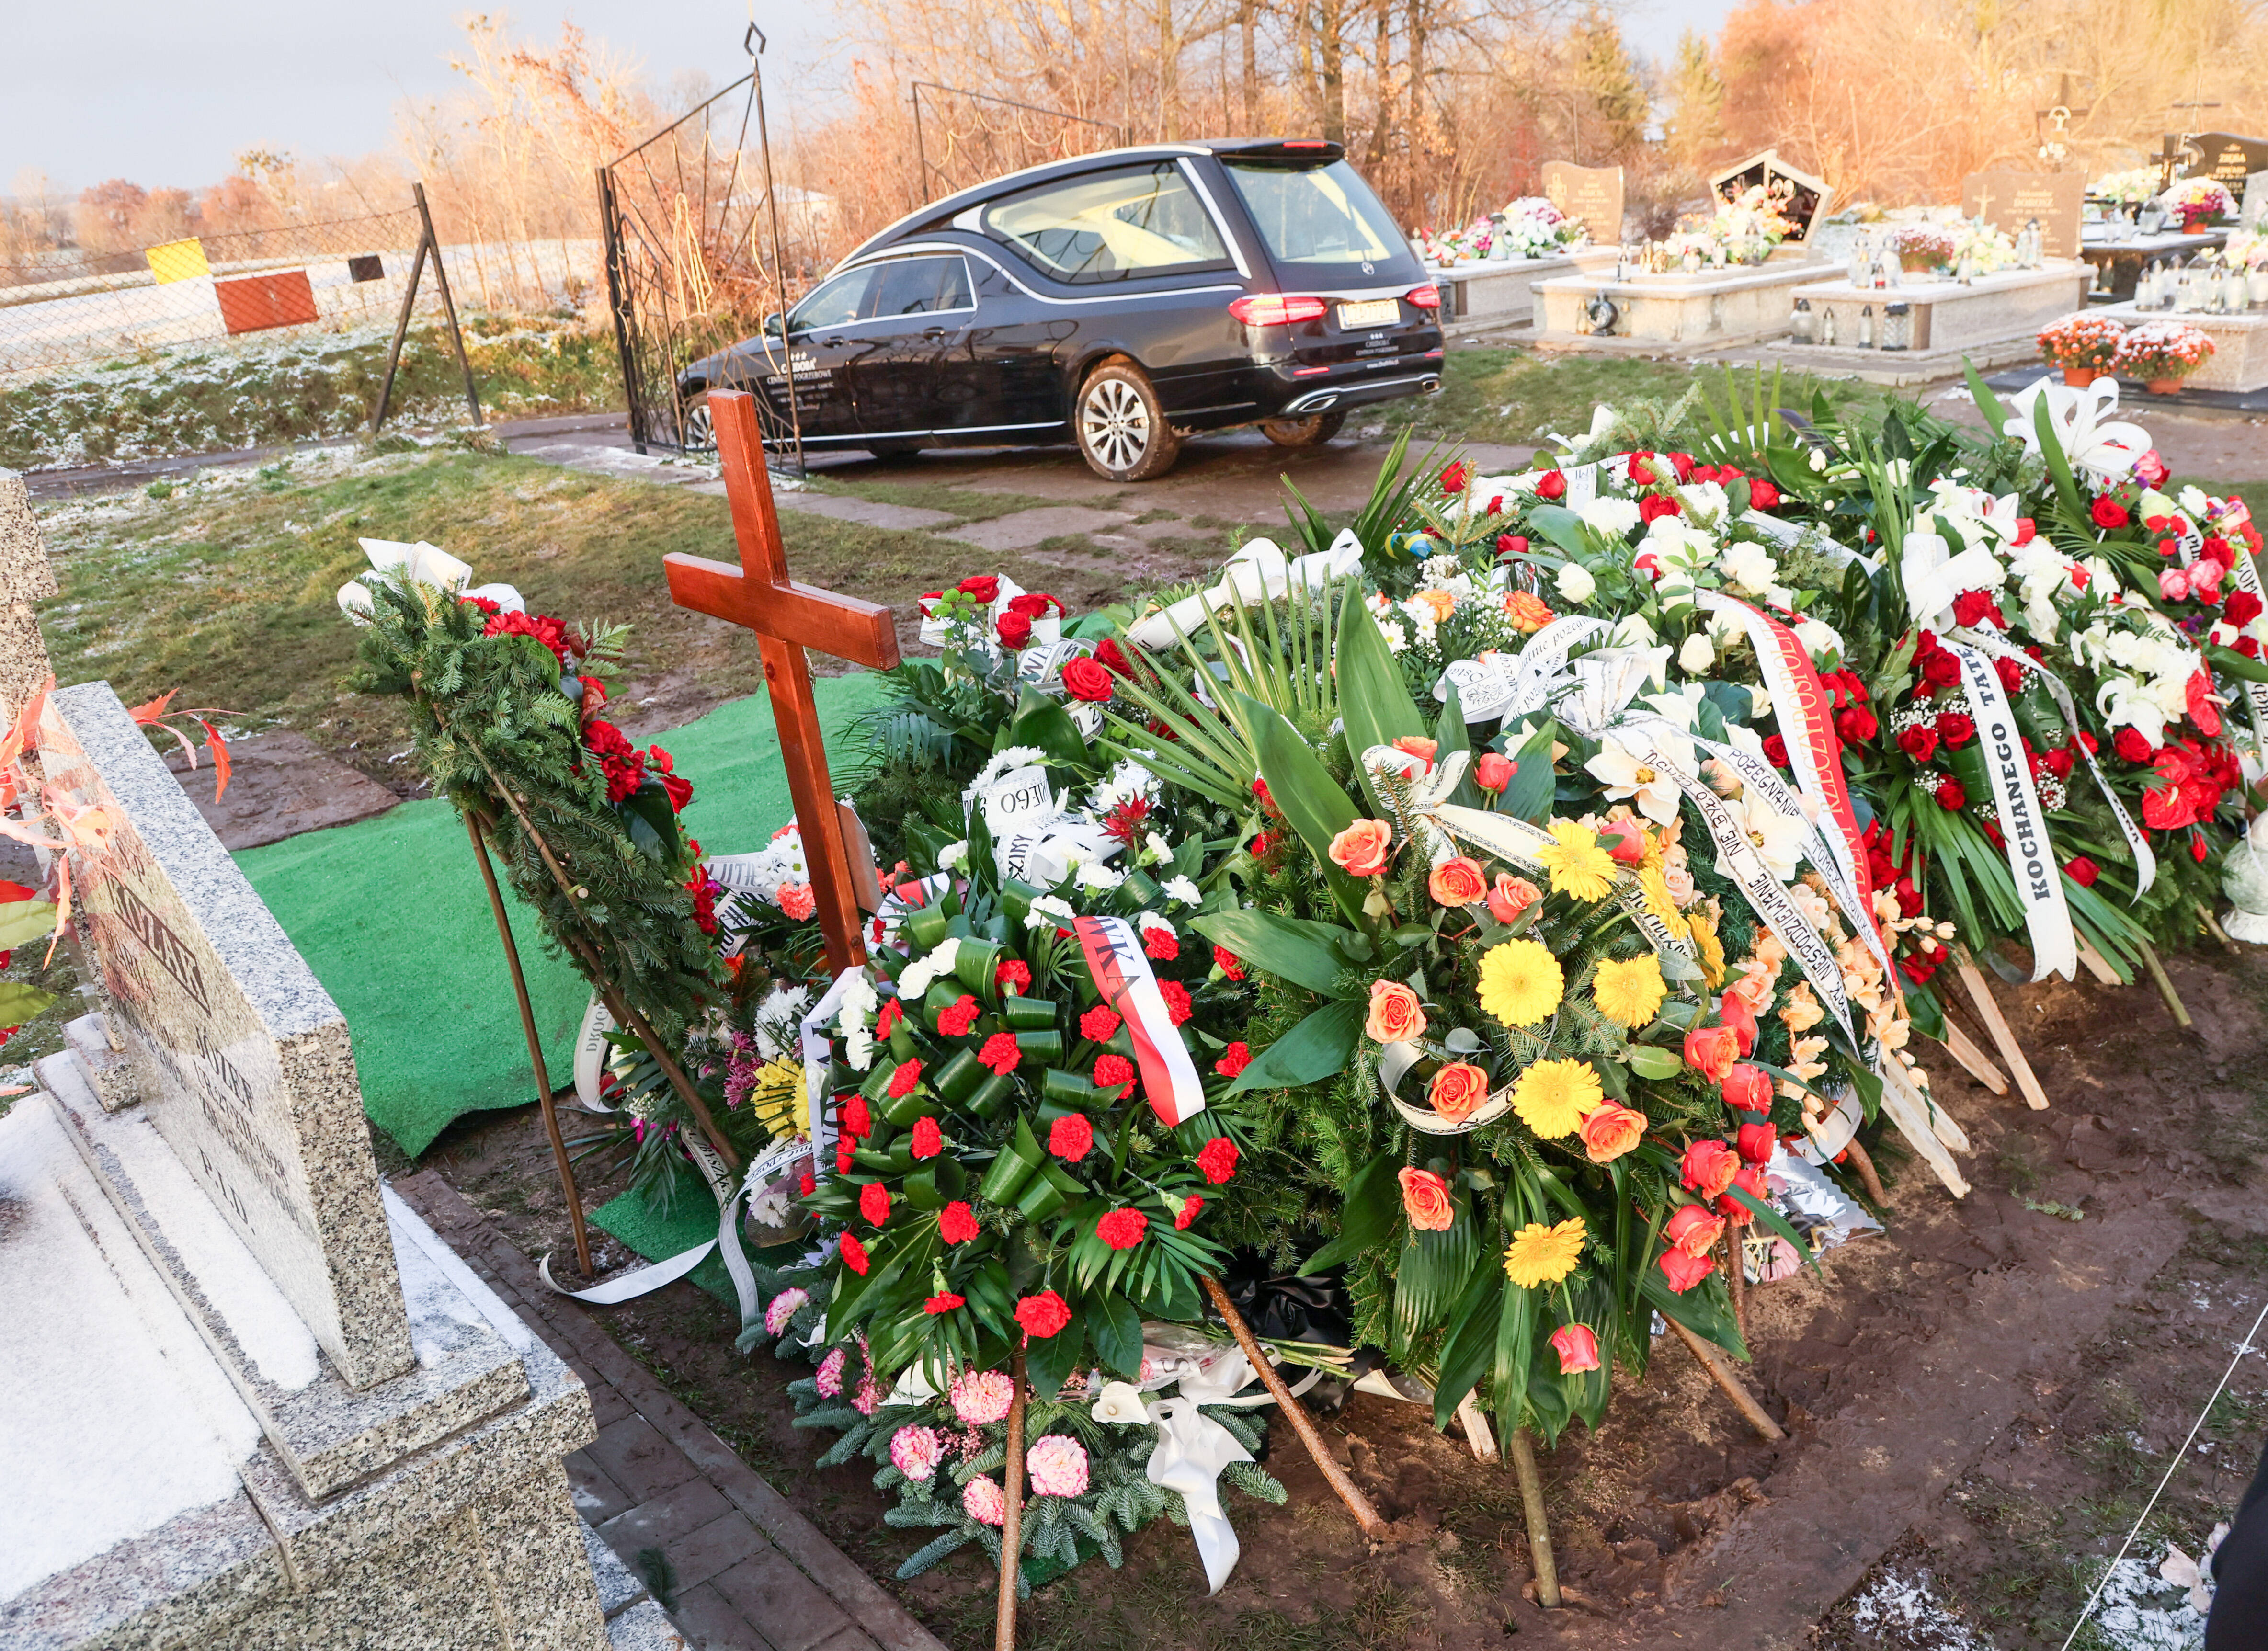 Una dintre victimele rachetei care a căzut în Polonia a fost înmormântată cu onoruri militare - Imaginea 6